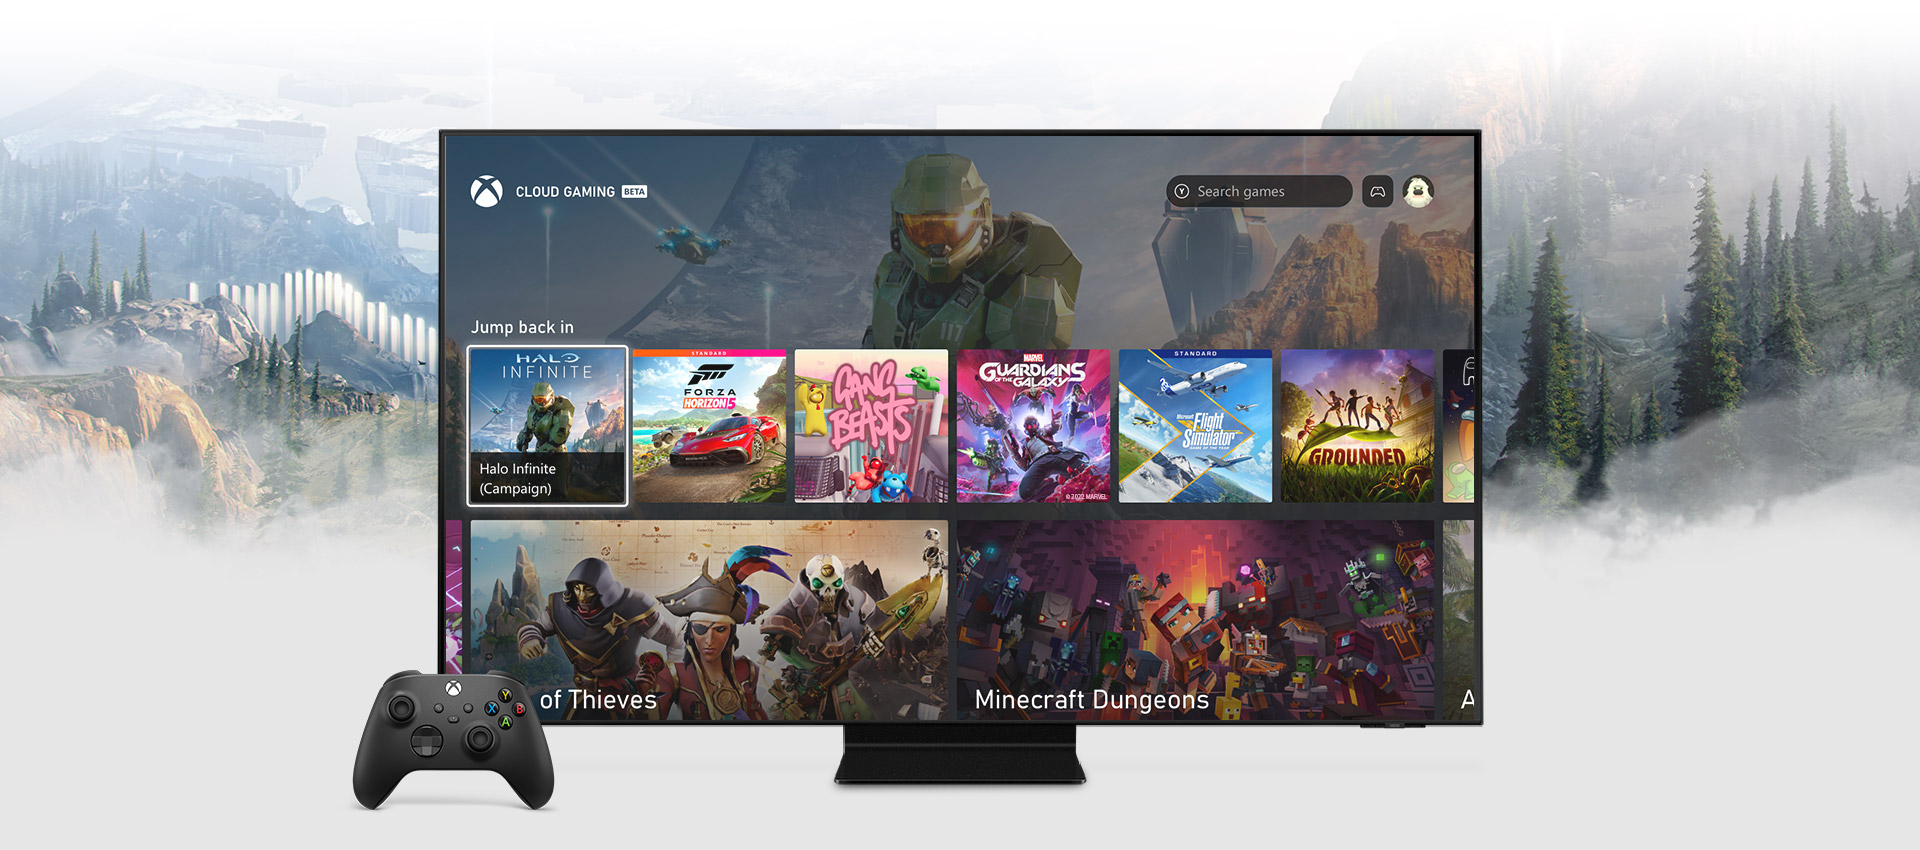 Ekran główny aplikacji Xbox na inteligentnym telewizorze firmy Samsung